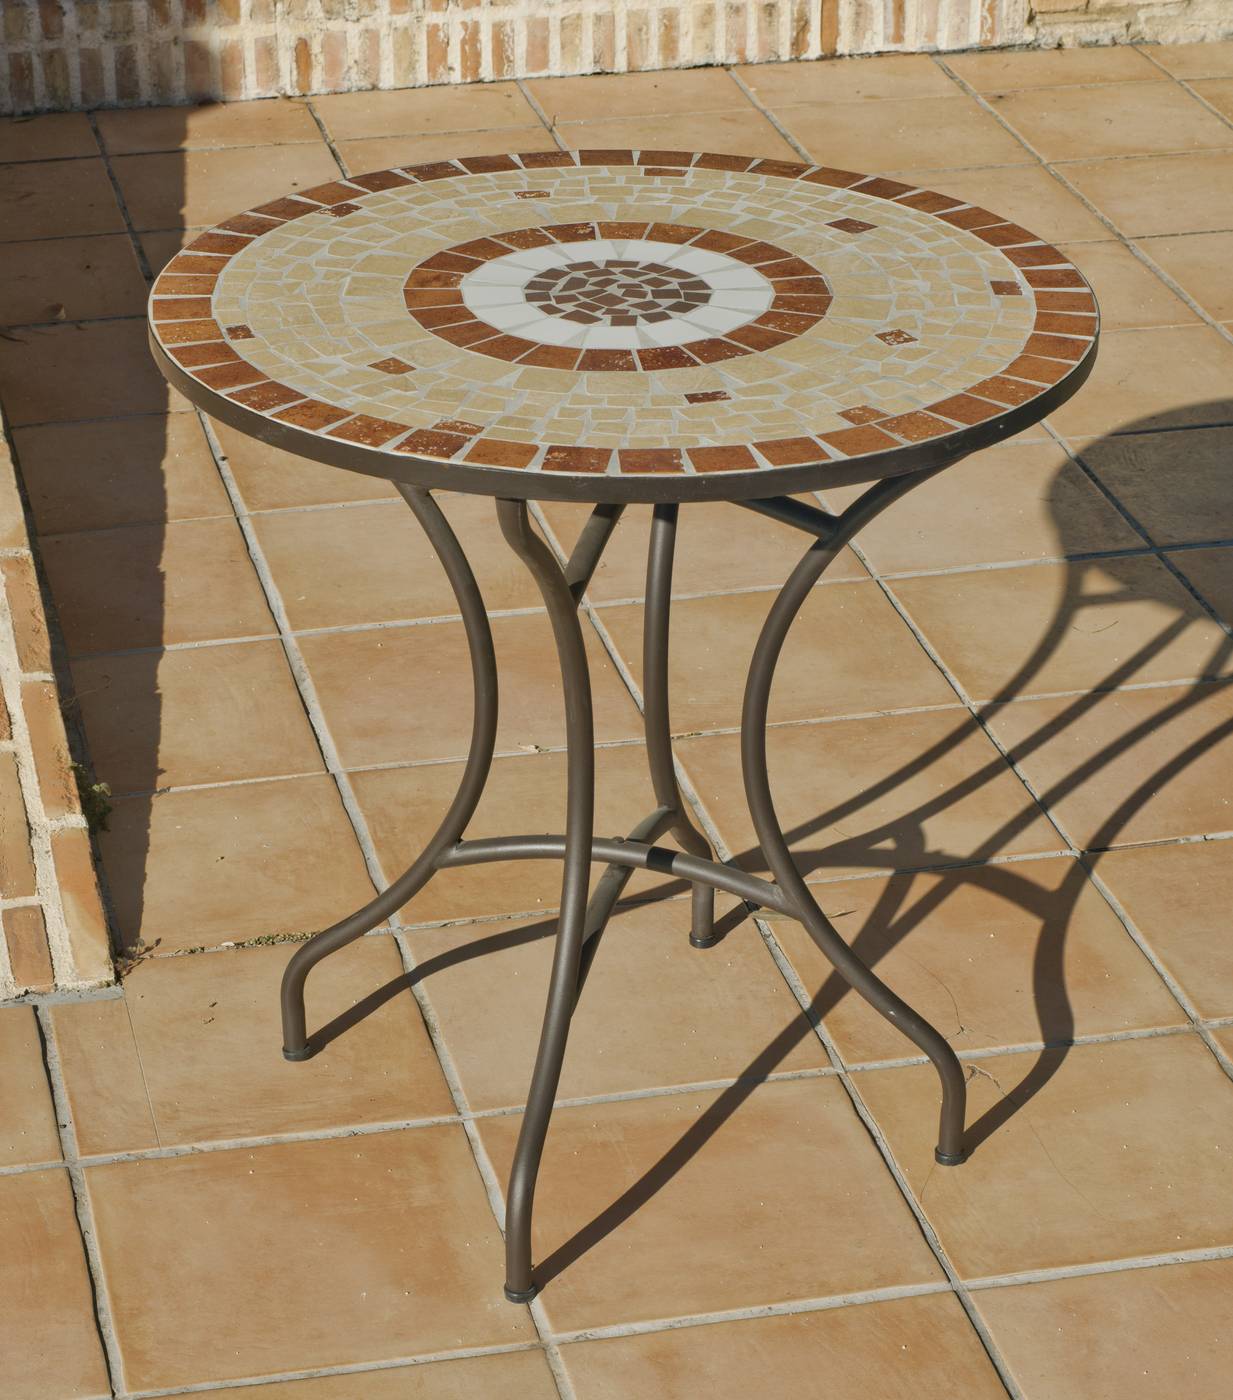 Conjunto Mosaico Claire-Brasil 75-4 - Conjunto para jardín y terraza de acero: 1 mesa de acero forjado con panel mosaico + 4 sillones de wicker reforzado